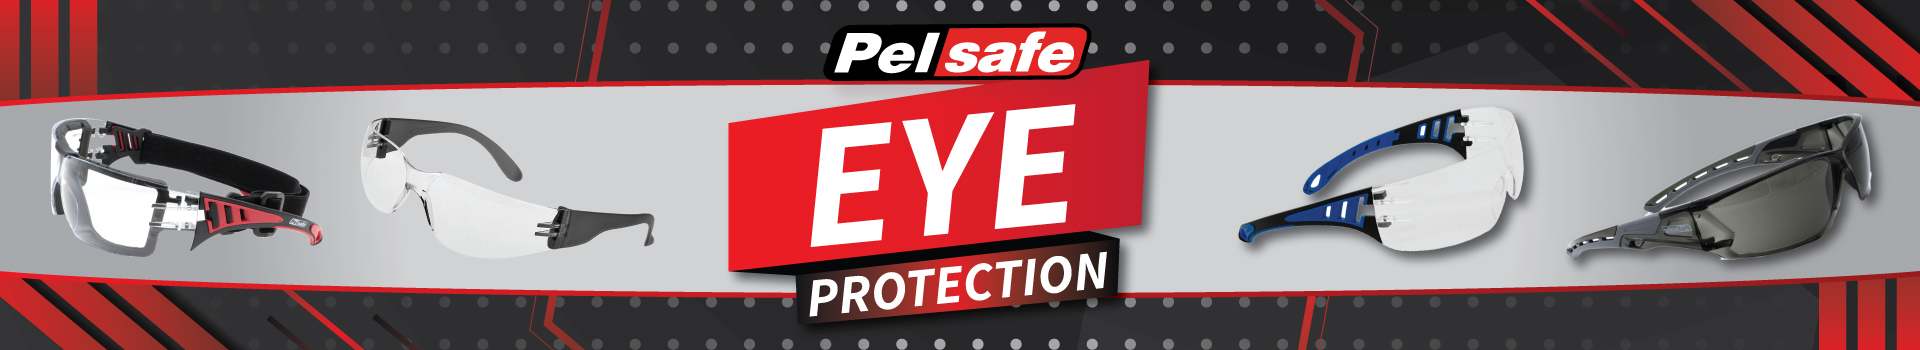 Pelsafe Eye Protection